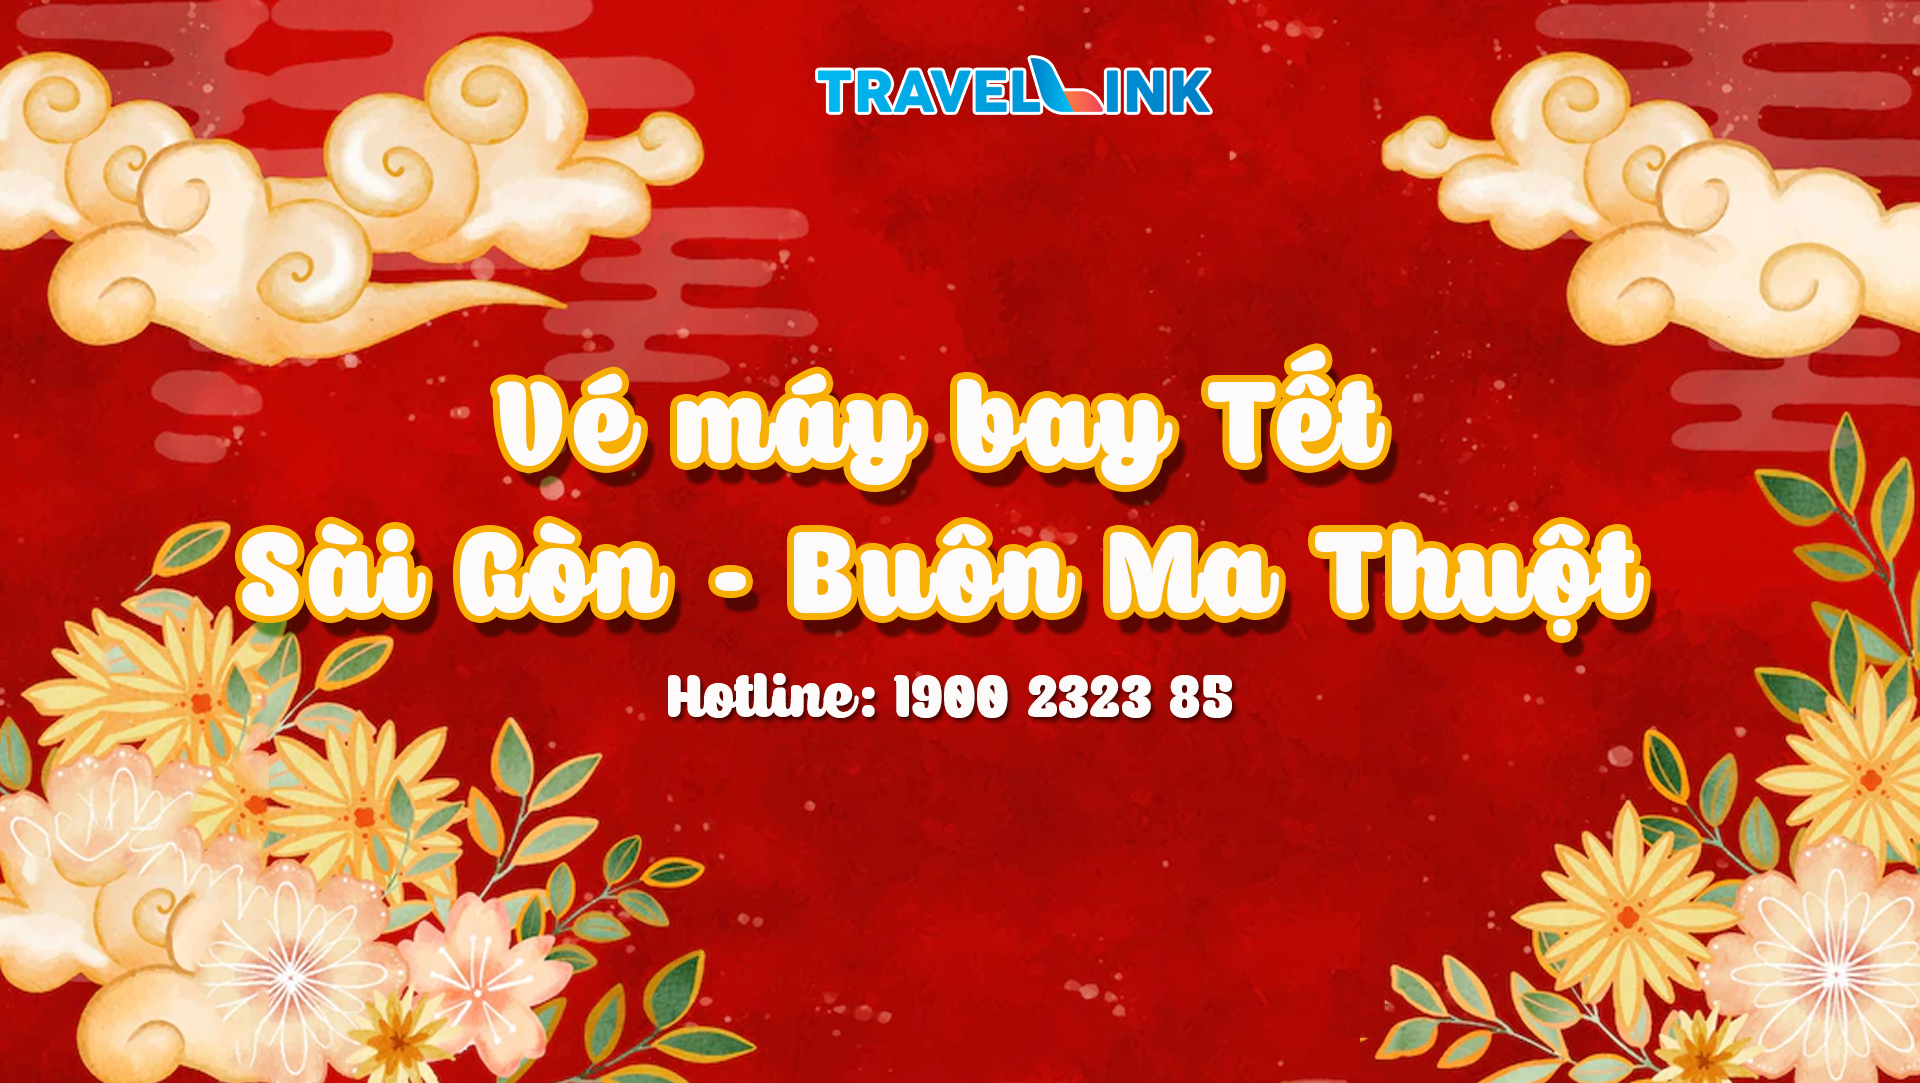 Vé máy bay Tết Sài Gòn - Buôn Ma Thuột